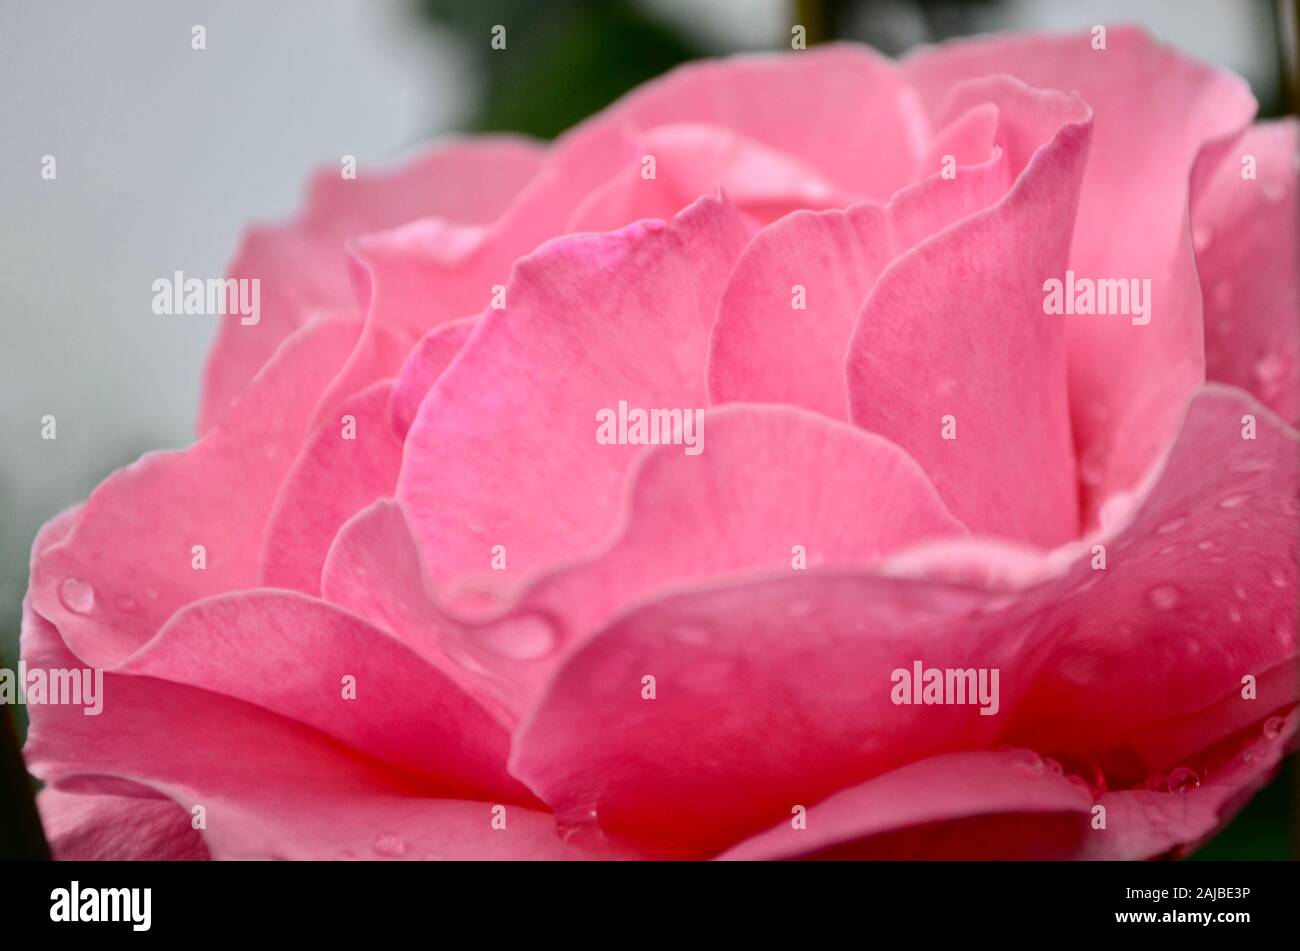 Die rose ist leicht rosa mit glatten Blütenblättern große aus der unteren rechten Ecke. Stockfoto